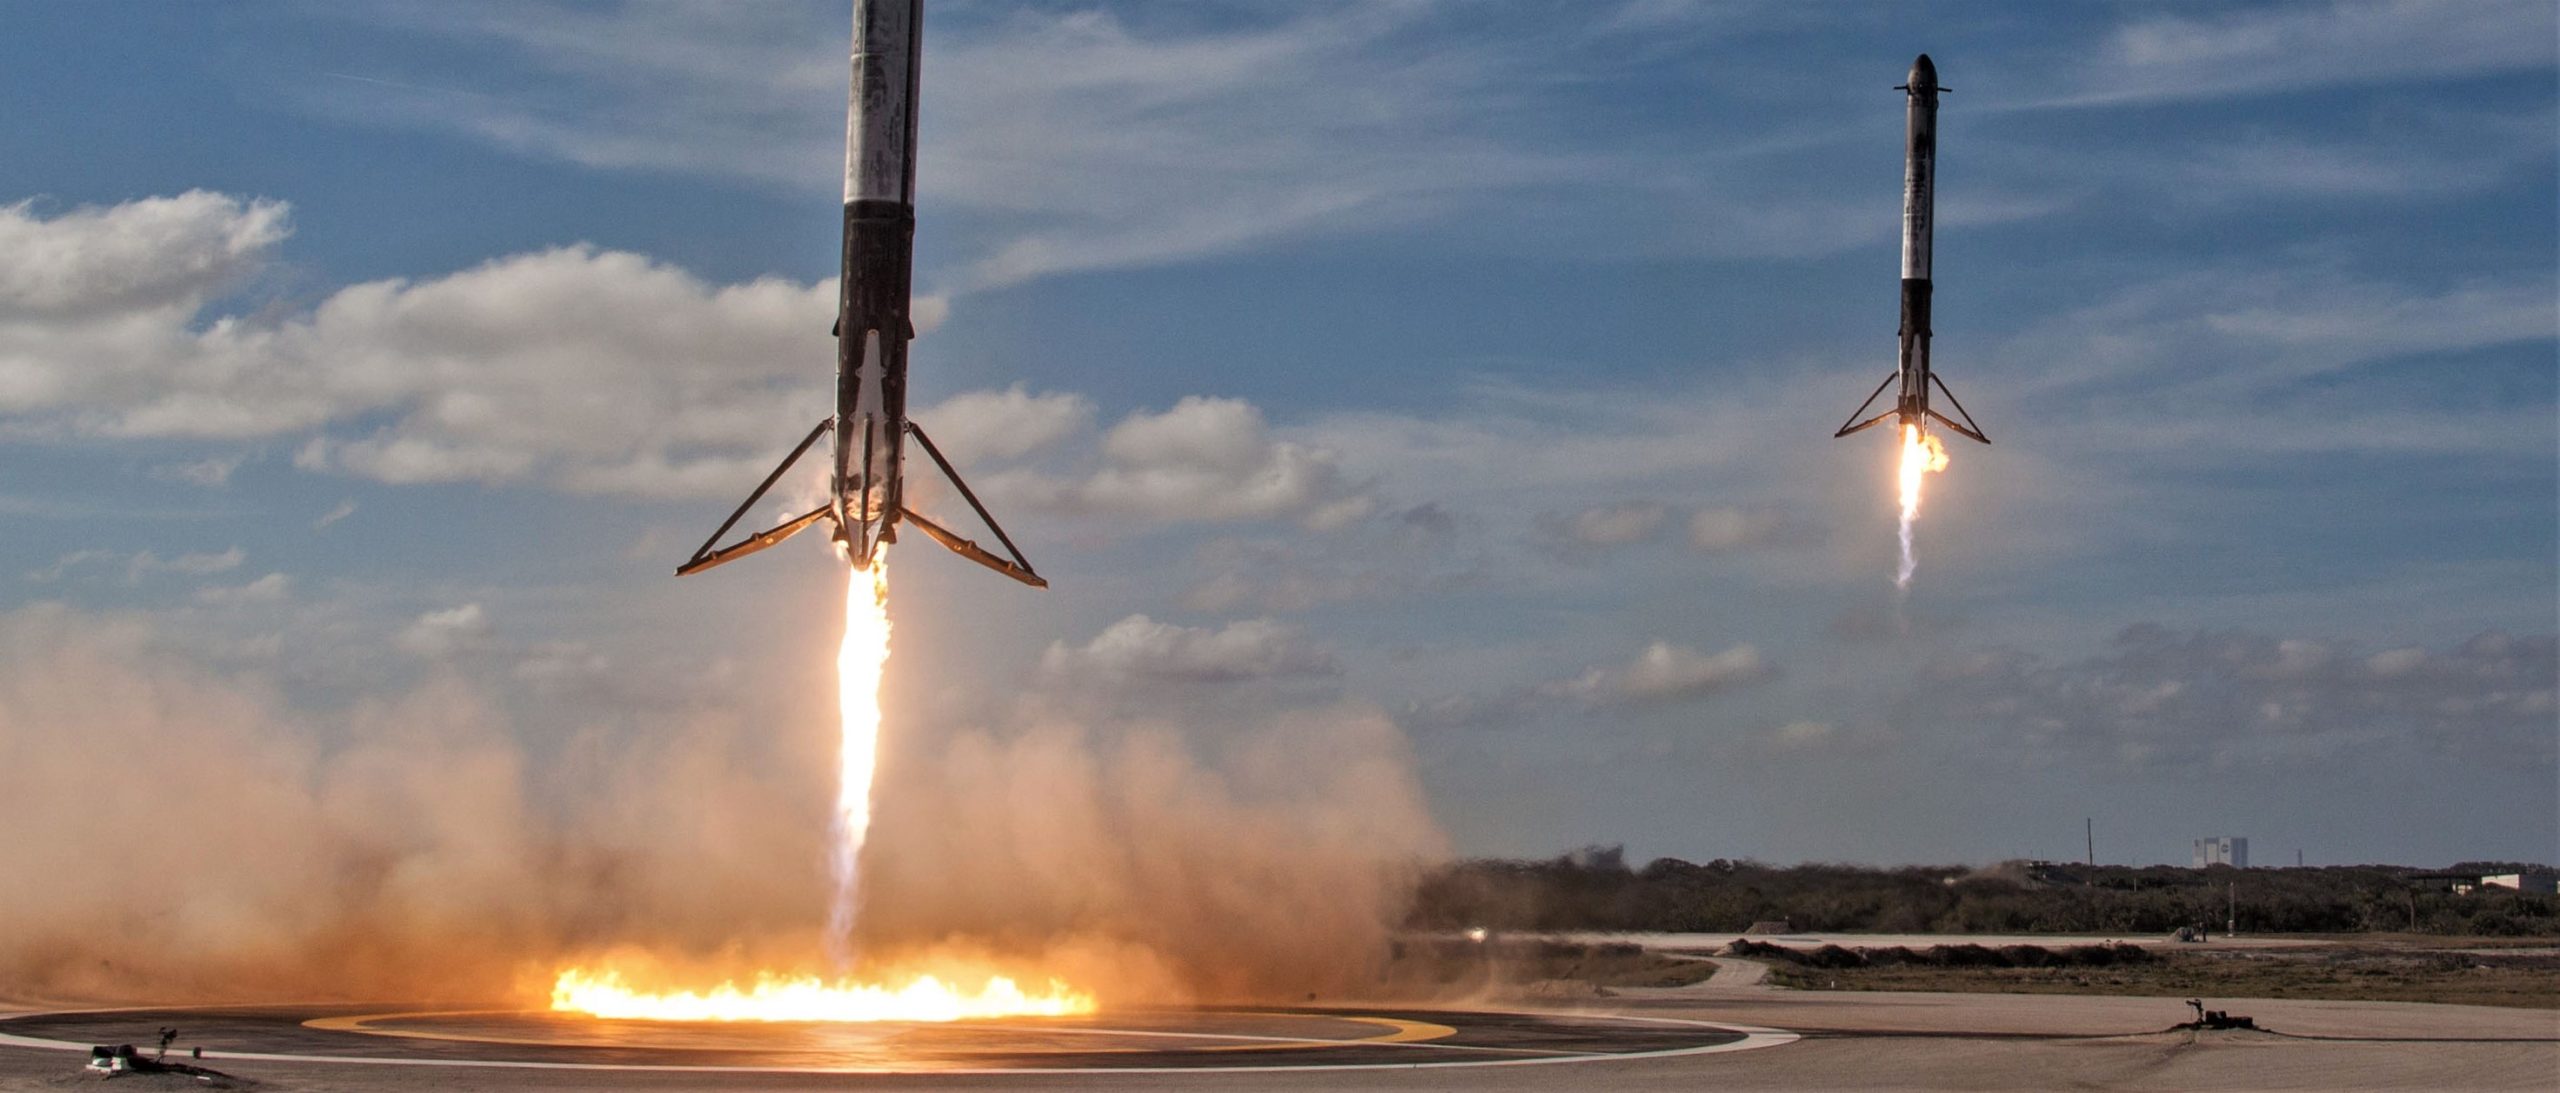 Τμήμα του πυραύλου Falcon Heavy της Space X γύρισε από το διάστημα αλλά χάθηκε στα κύματα